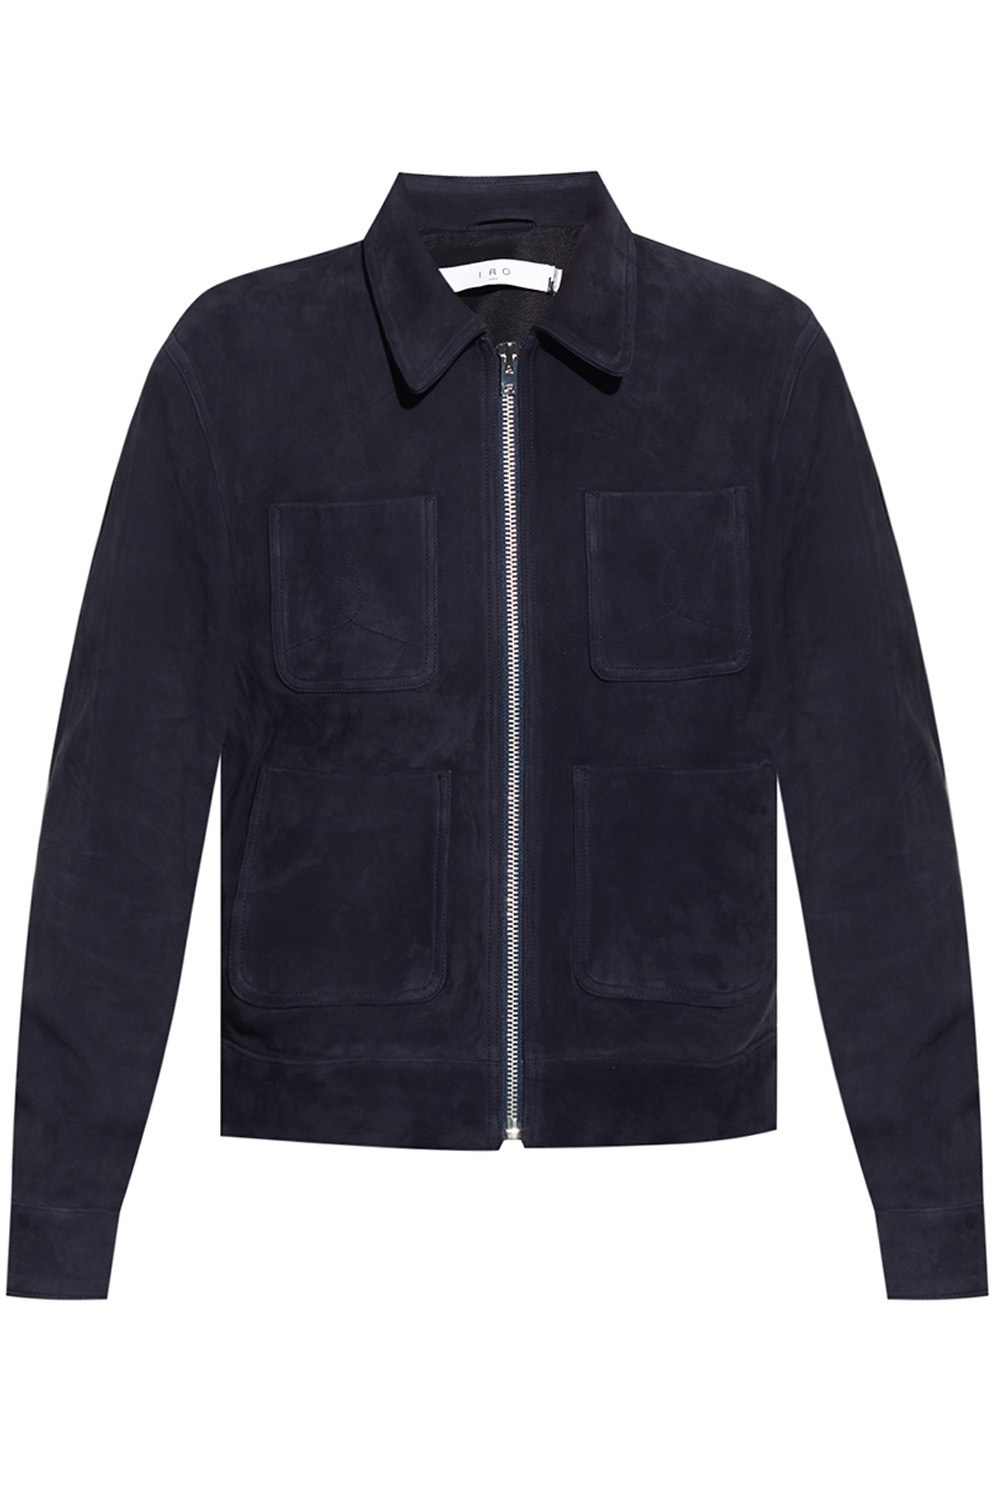 Louis Vuitton Men's Black Suede Front Jacket size XXL